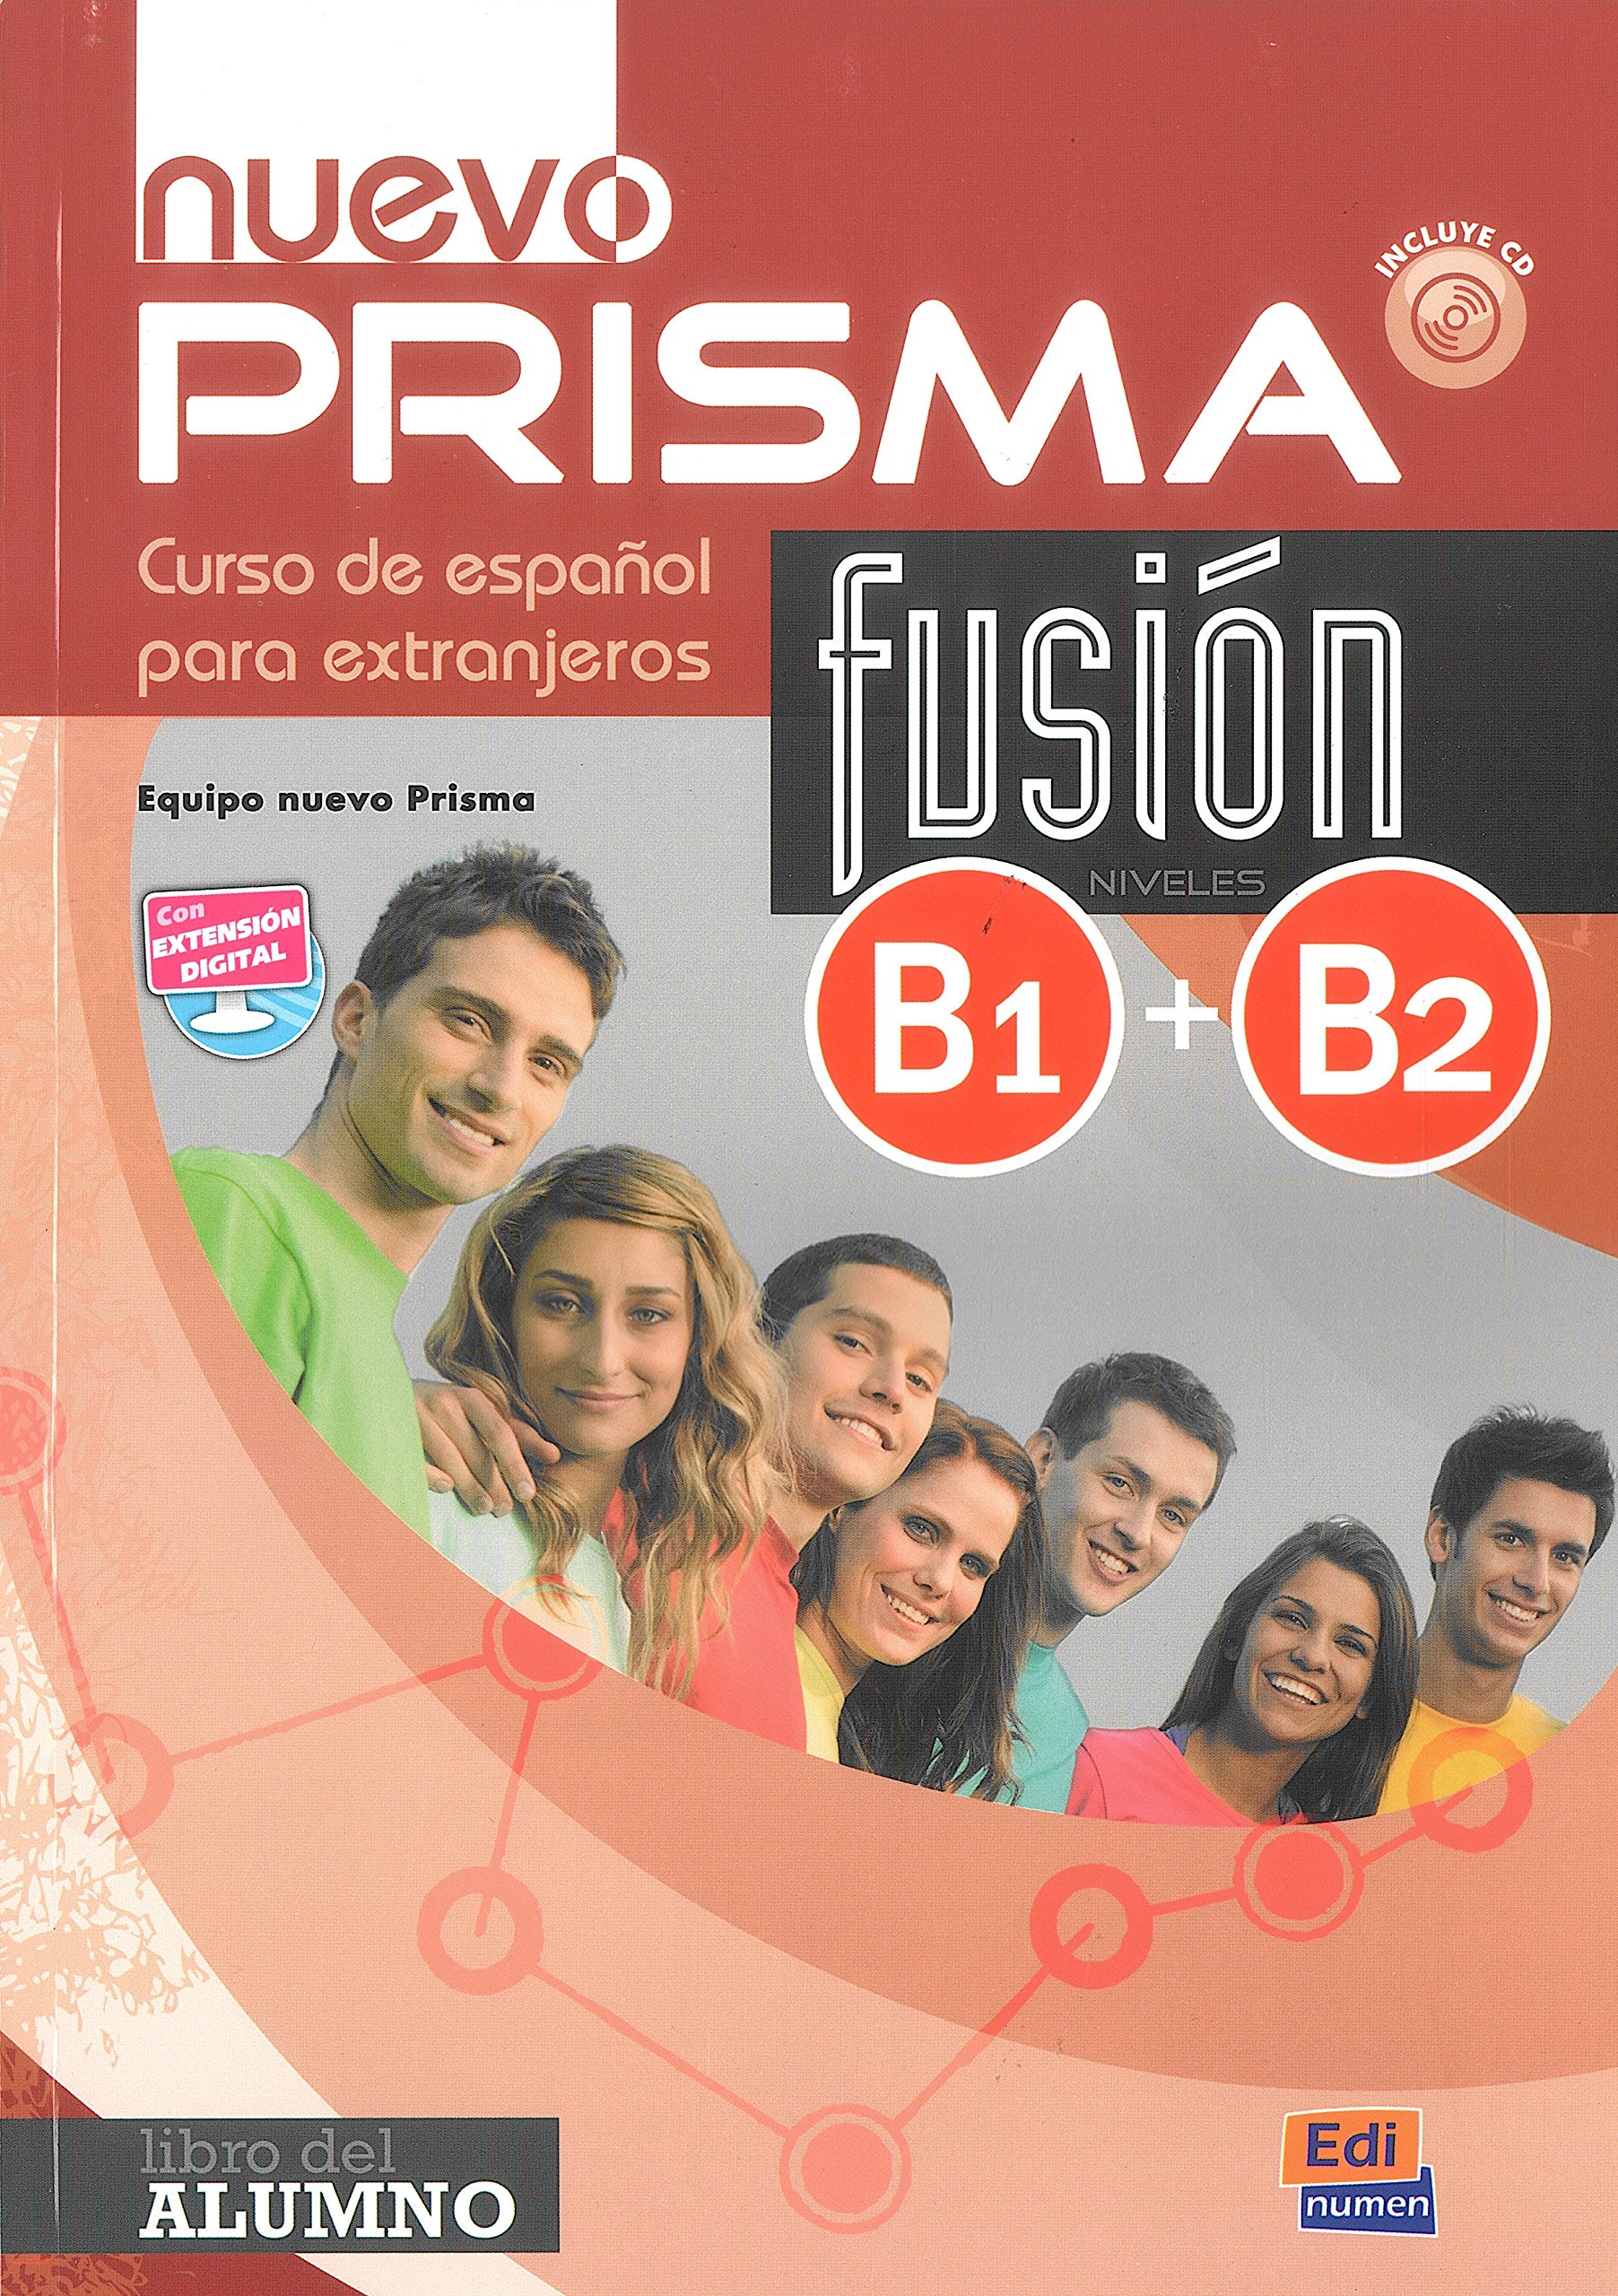 NUEVO PRISMA FUSION B1 + B2 Libro del Alumno+ Extensión digital